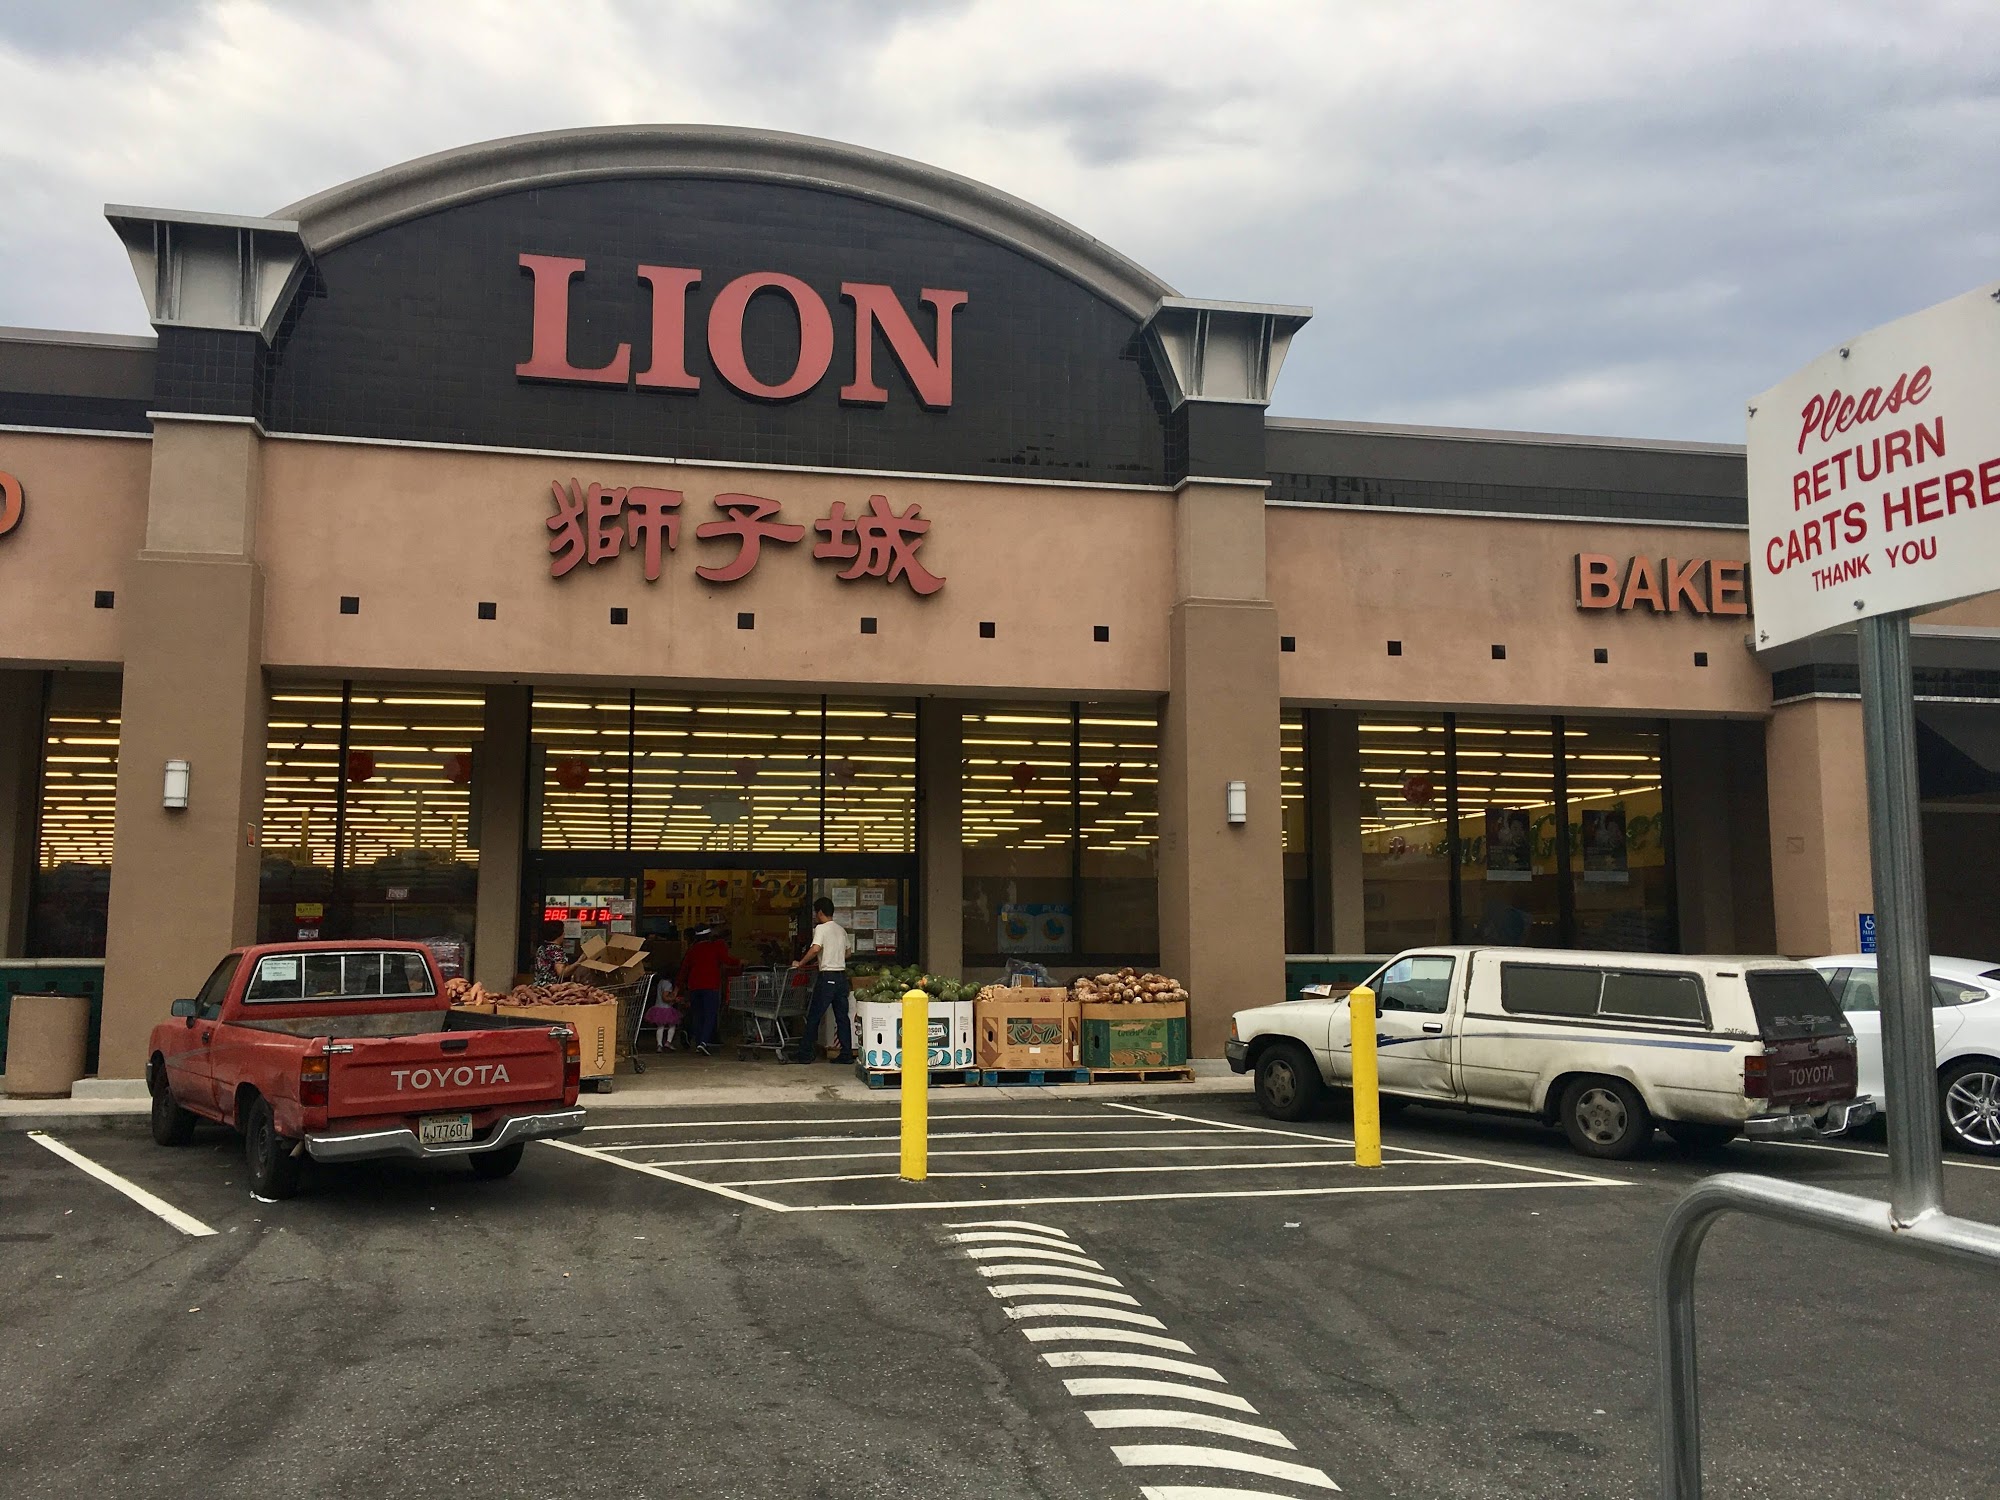 Lion Market